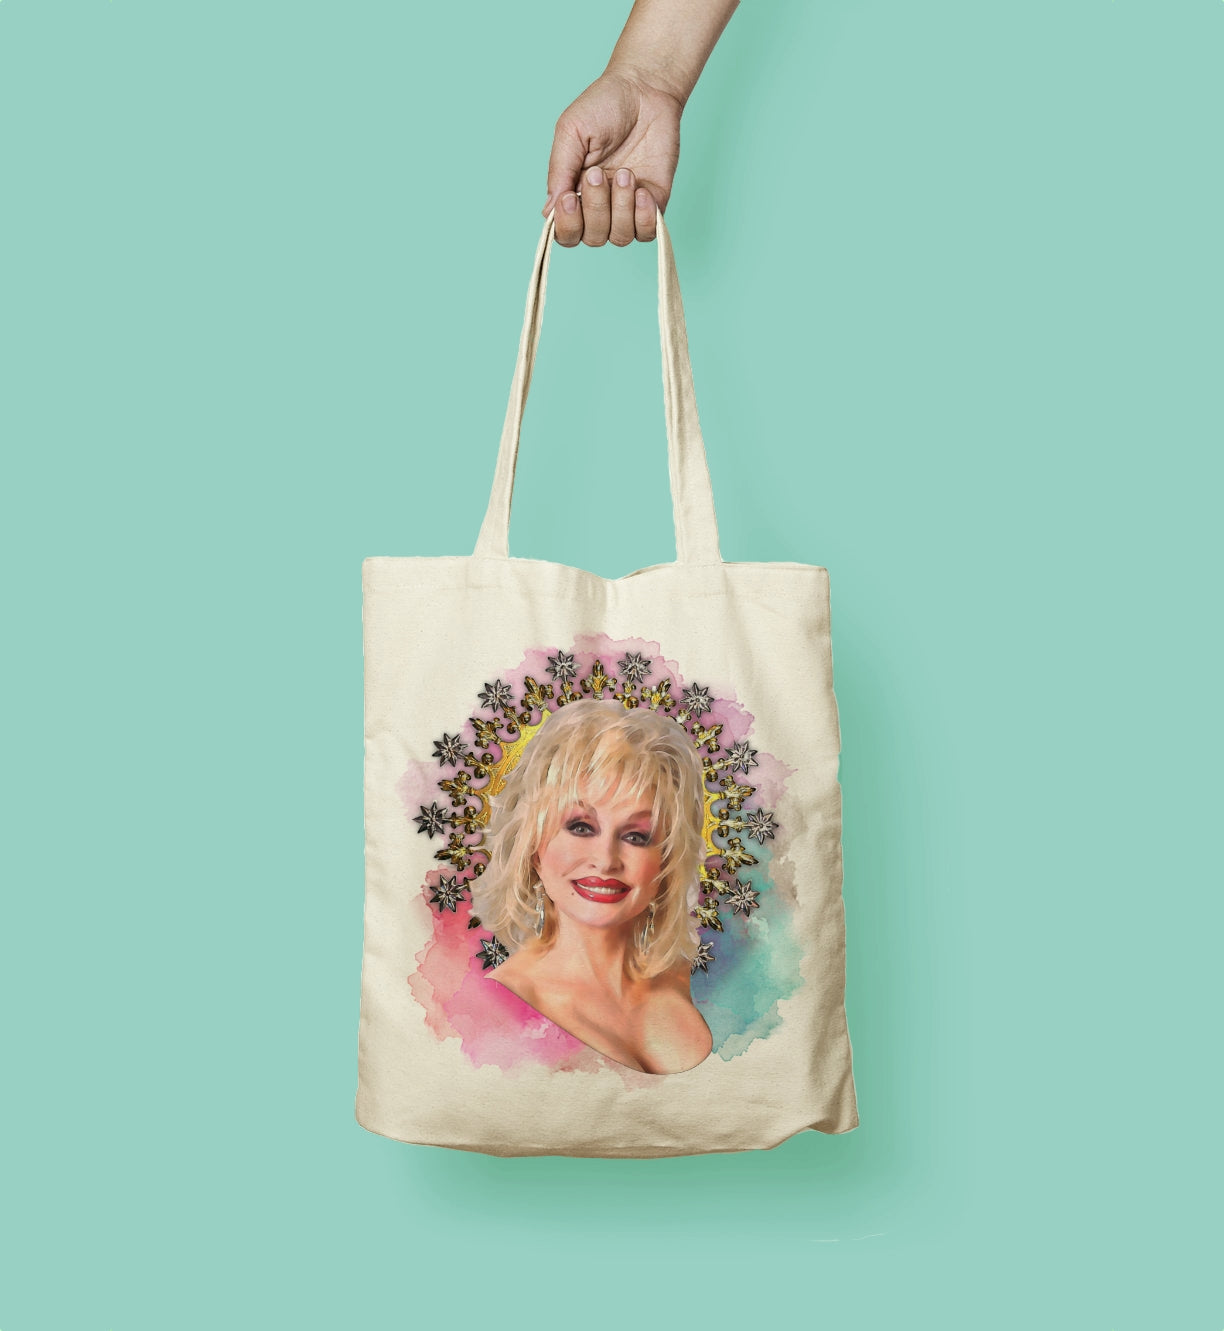 Dolly Parton Watercolor Tote Bag